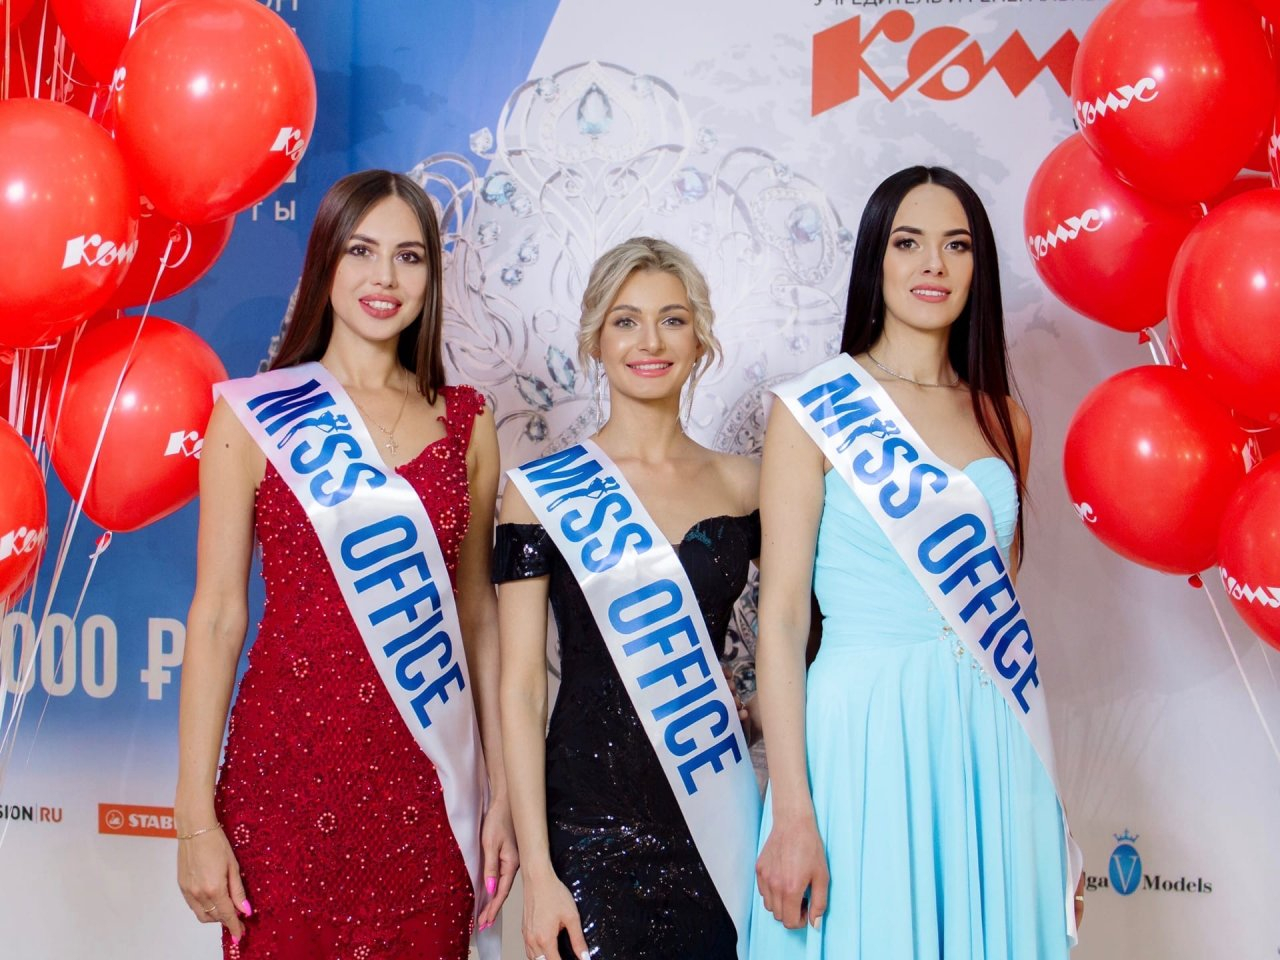 Три девушки из Чебоксар прошли в полуфинал международного конкурса красоты «Мисс Офис»